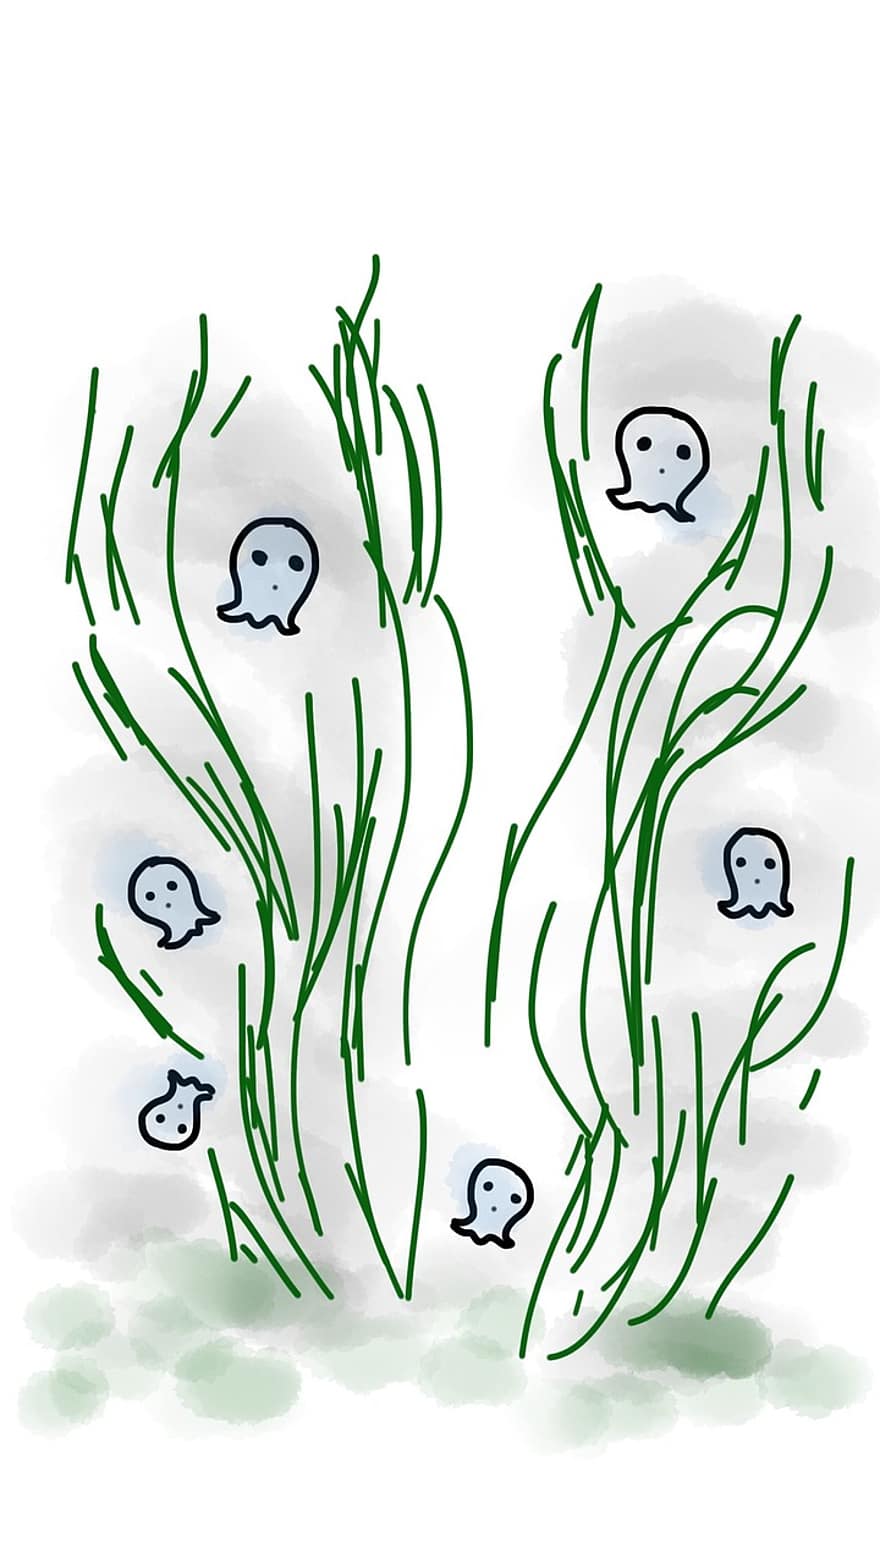 fantomă, iarbă, Halloween, mister, plutitor, întuneric, frică, verde, Mica Fantomă, infricosator, Înfricoșător